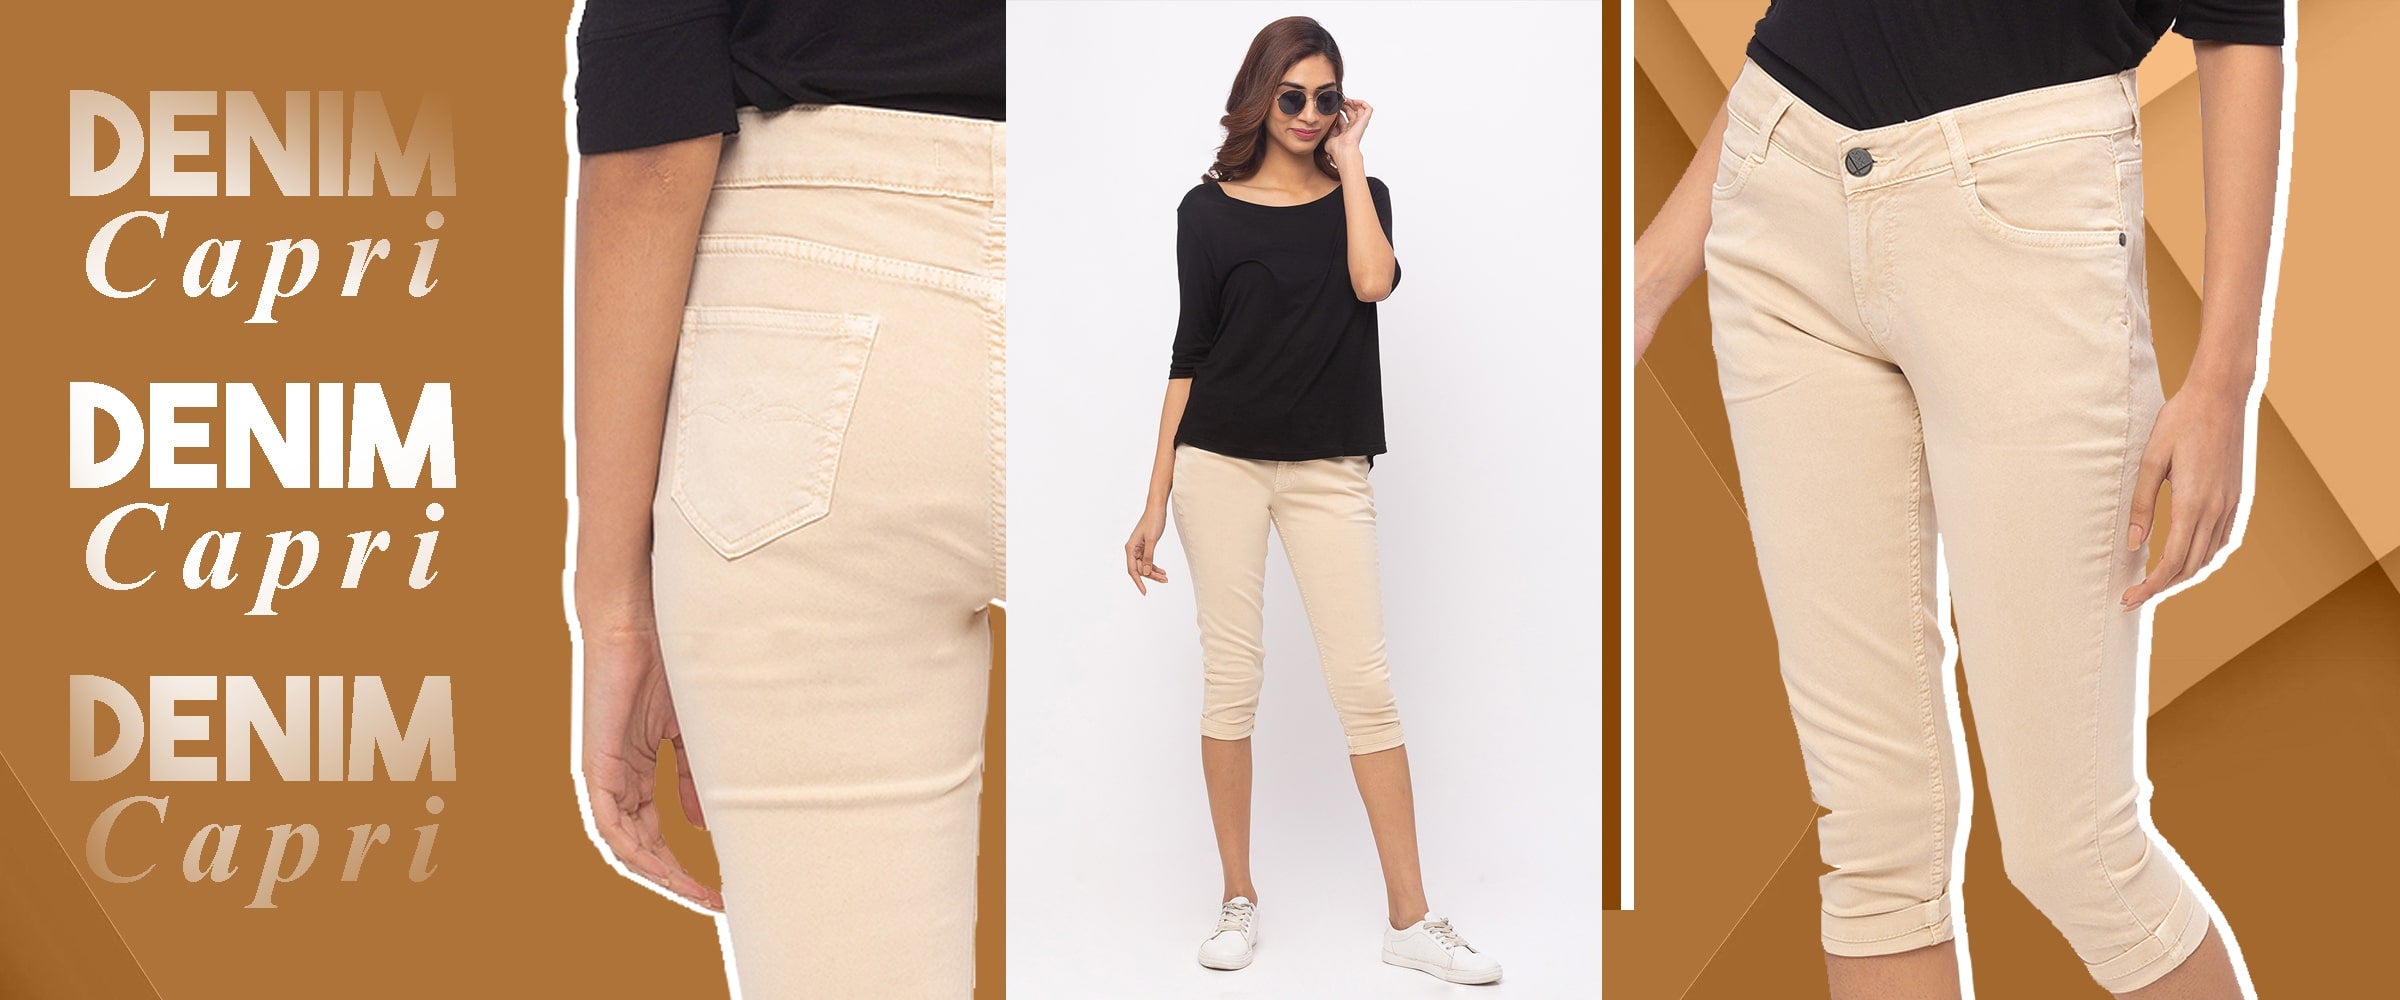 Buy Formal Trousers for Women Online | Women's formal pants